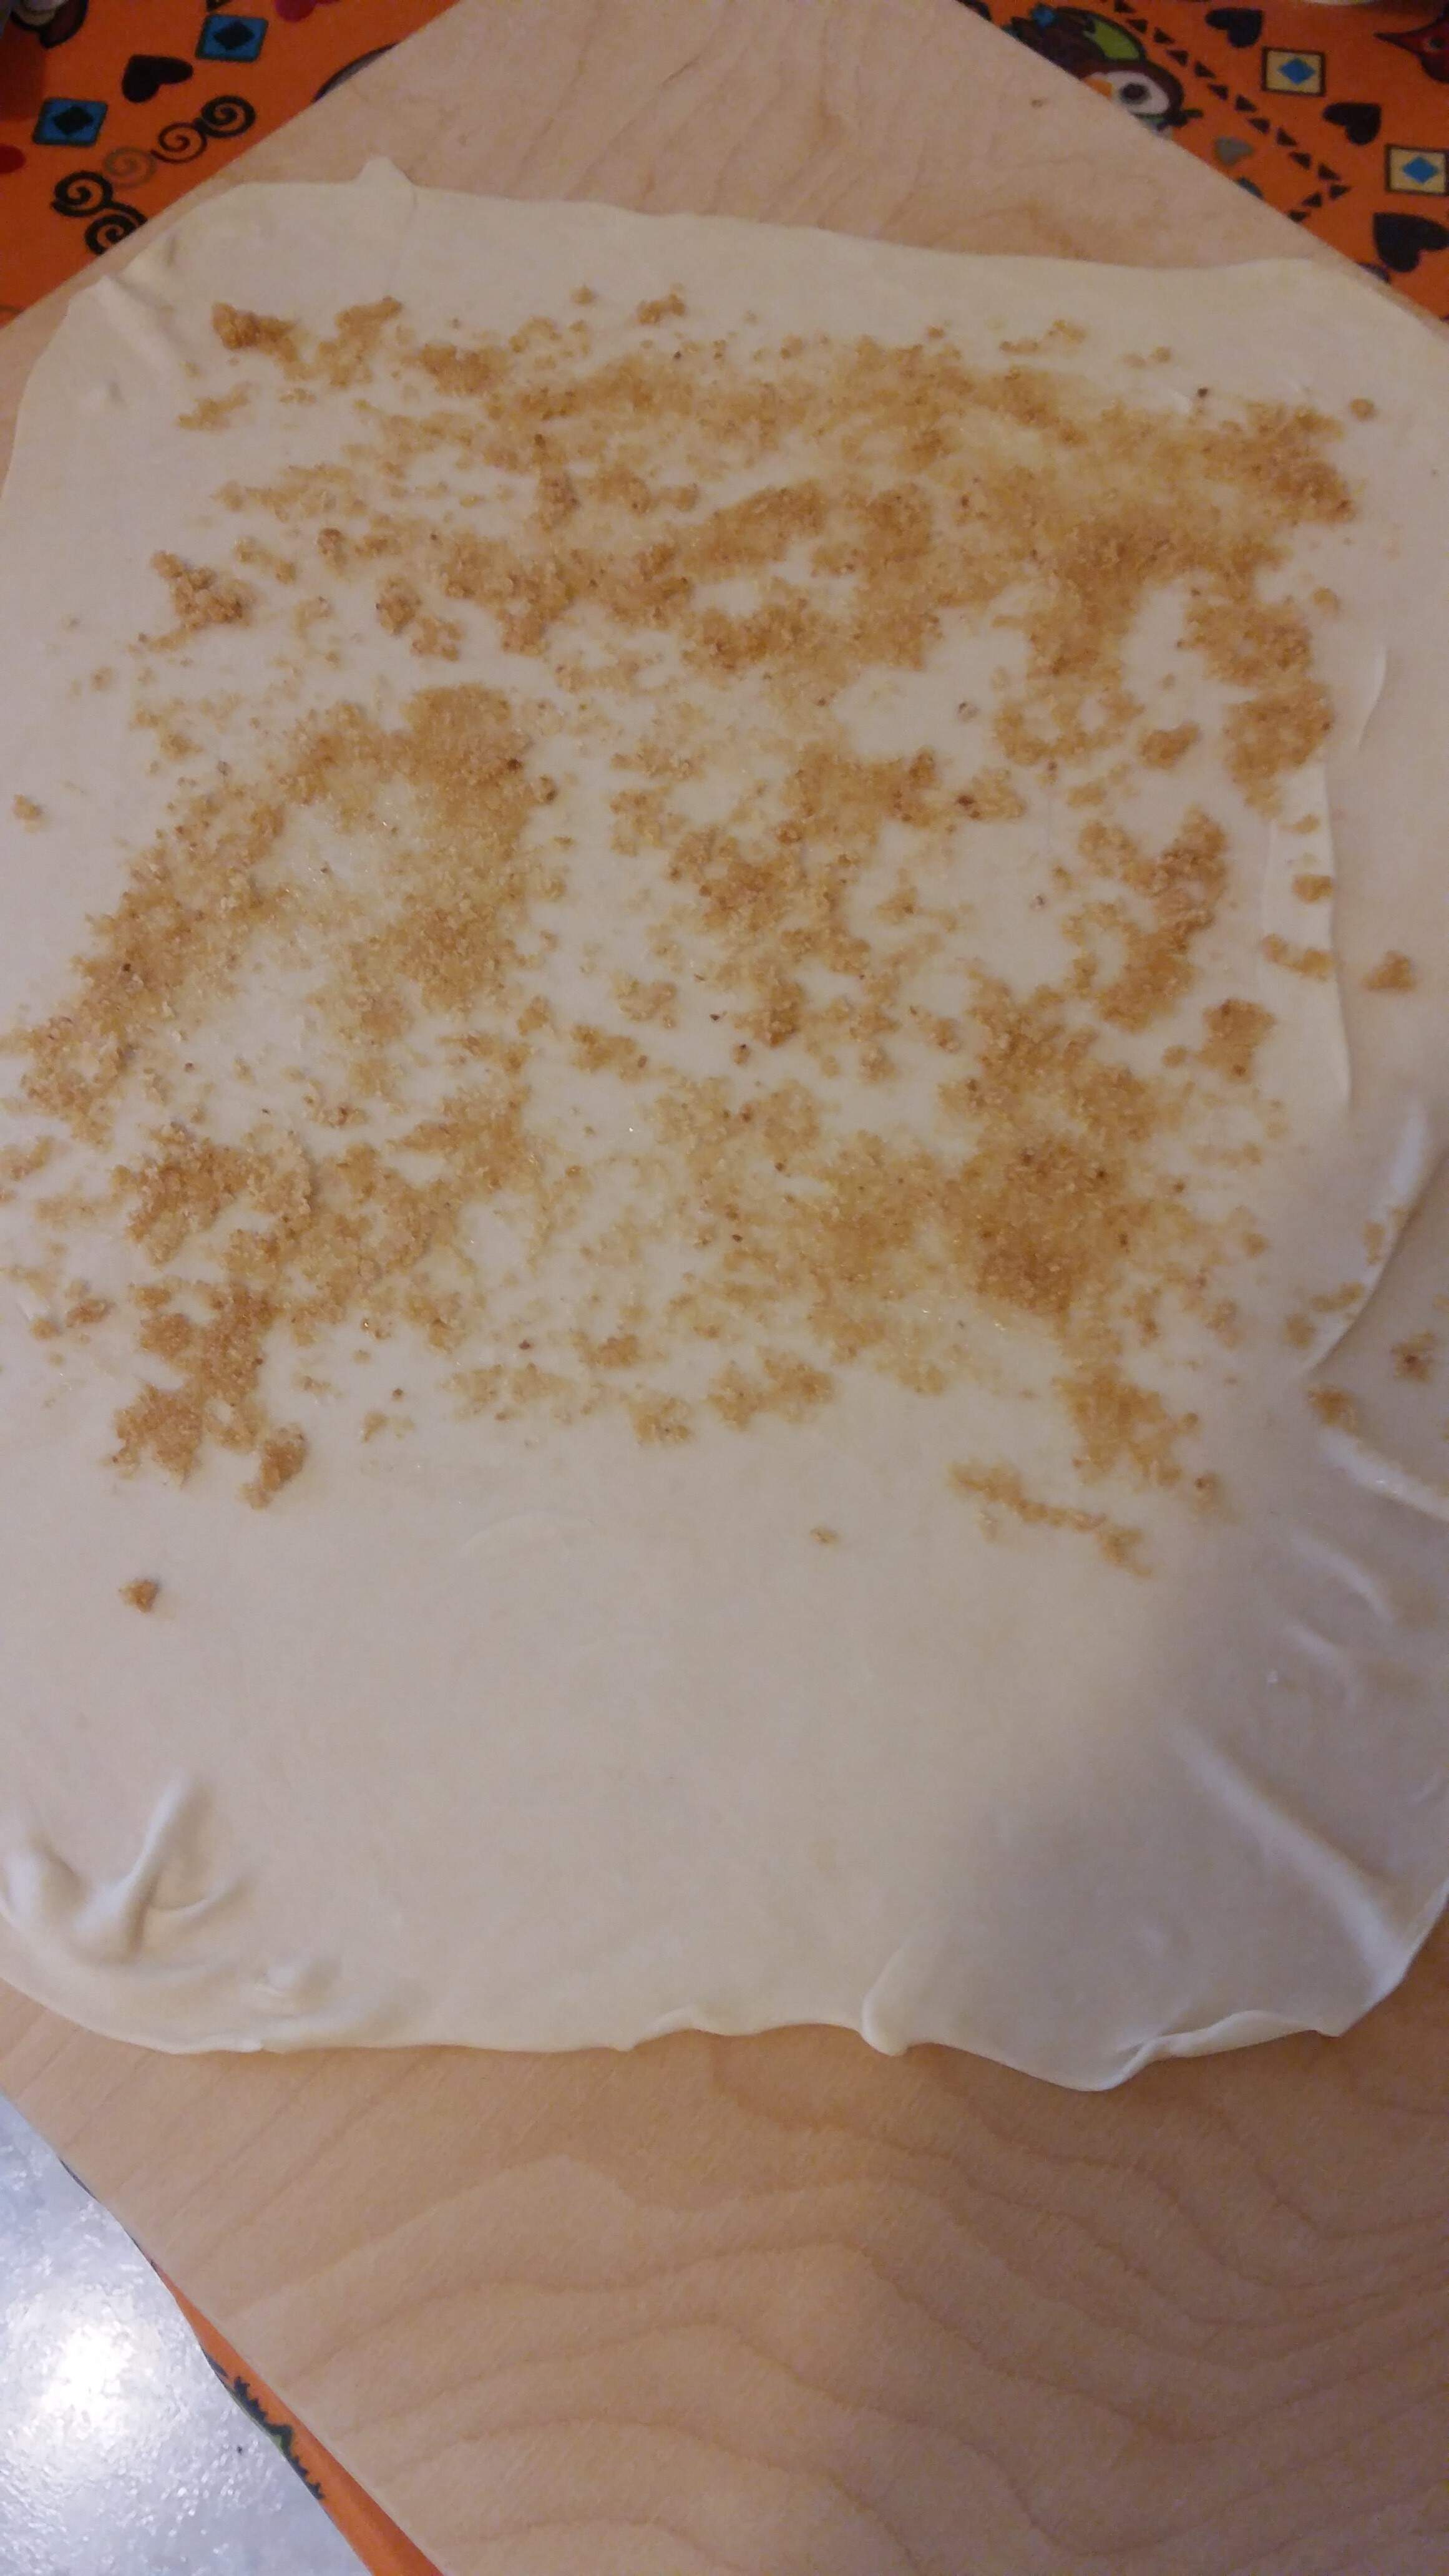 Ulozylam na 2/3 powierzchni ciasta podsmazona na masle tarta bulke.